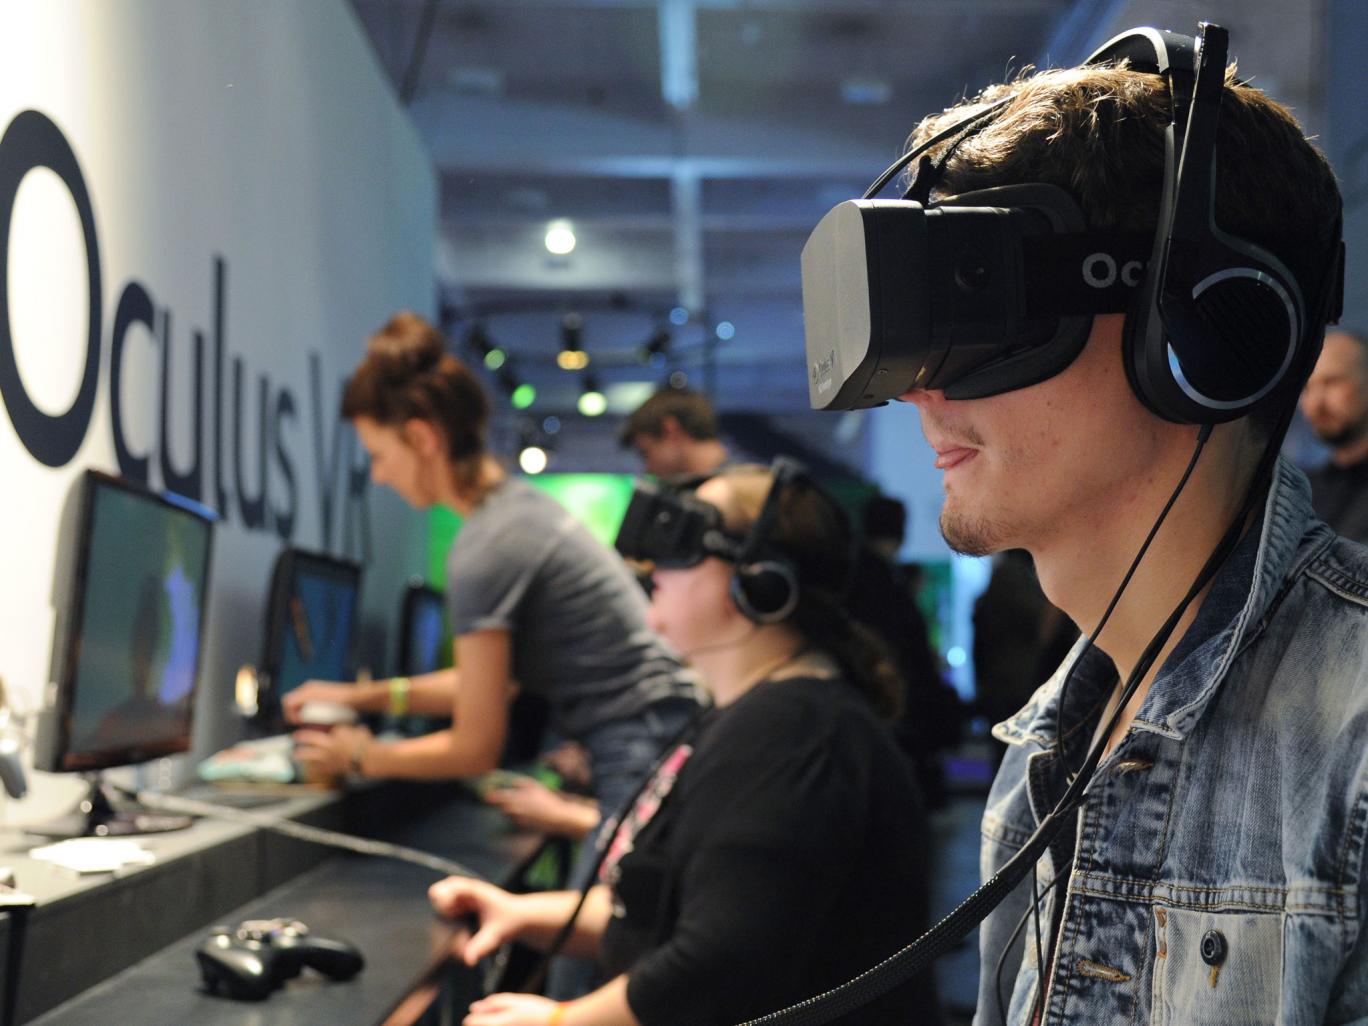 Oculus rift và HTC Vive khó cạnh tranh tại thị trường Việt